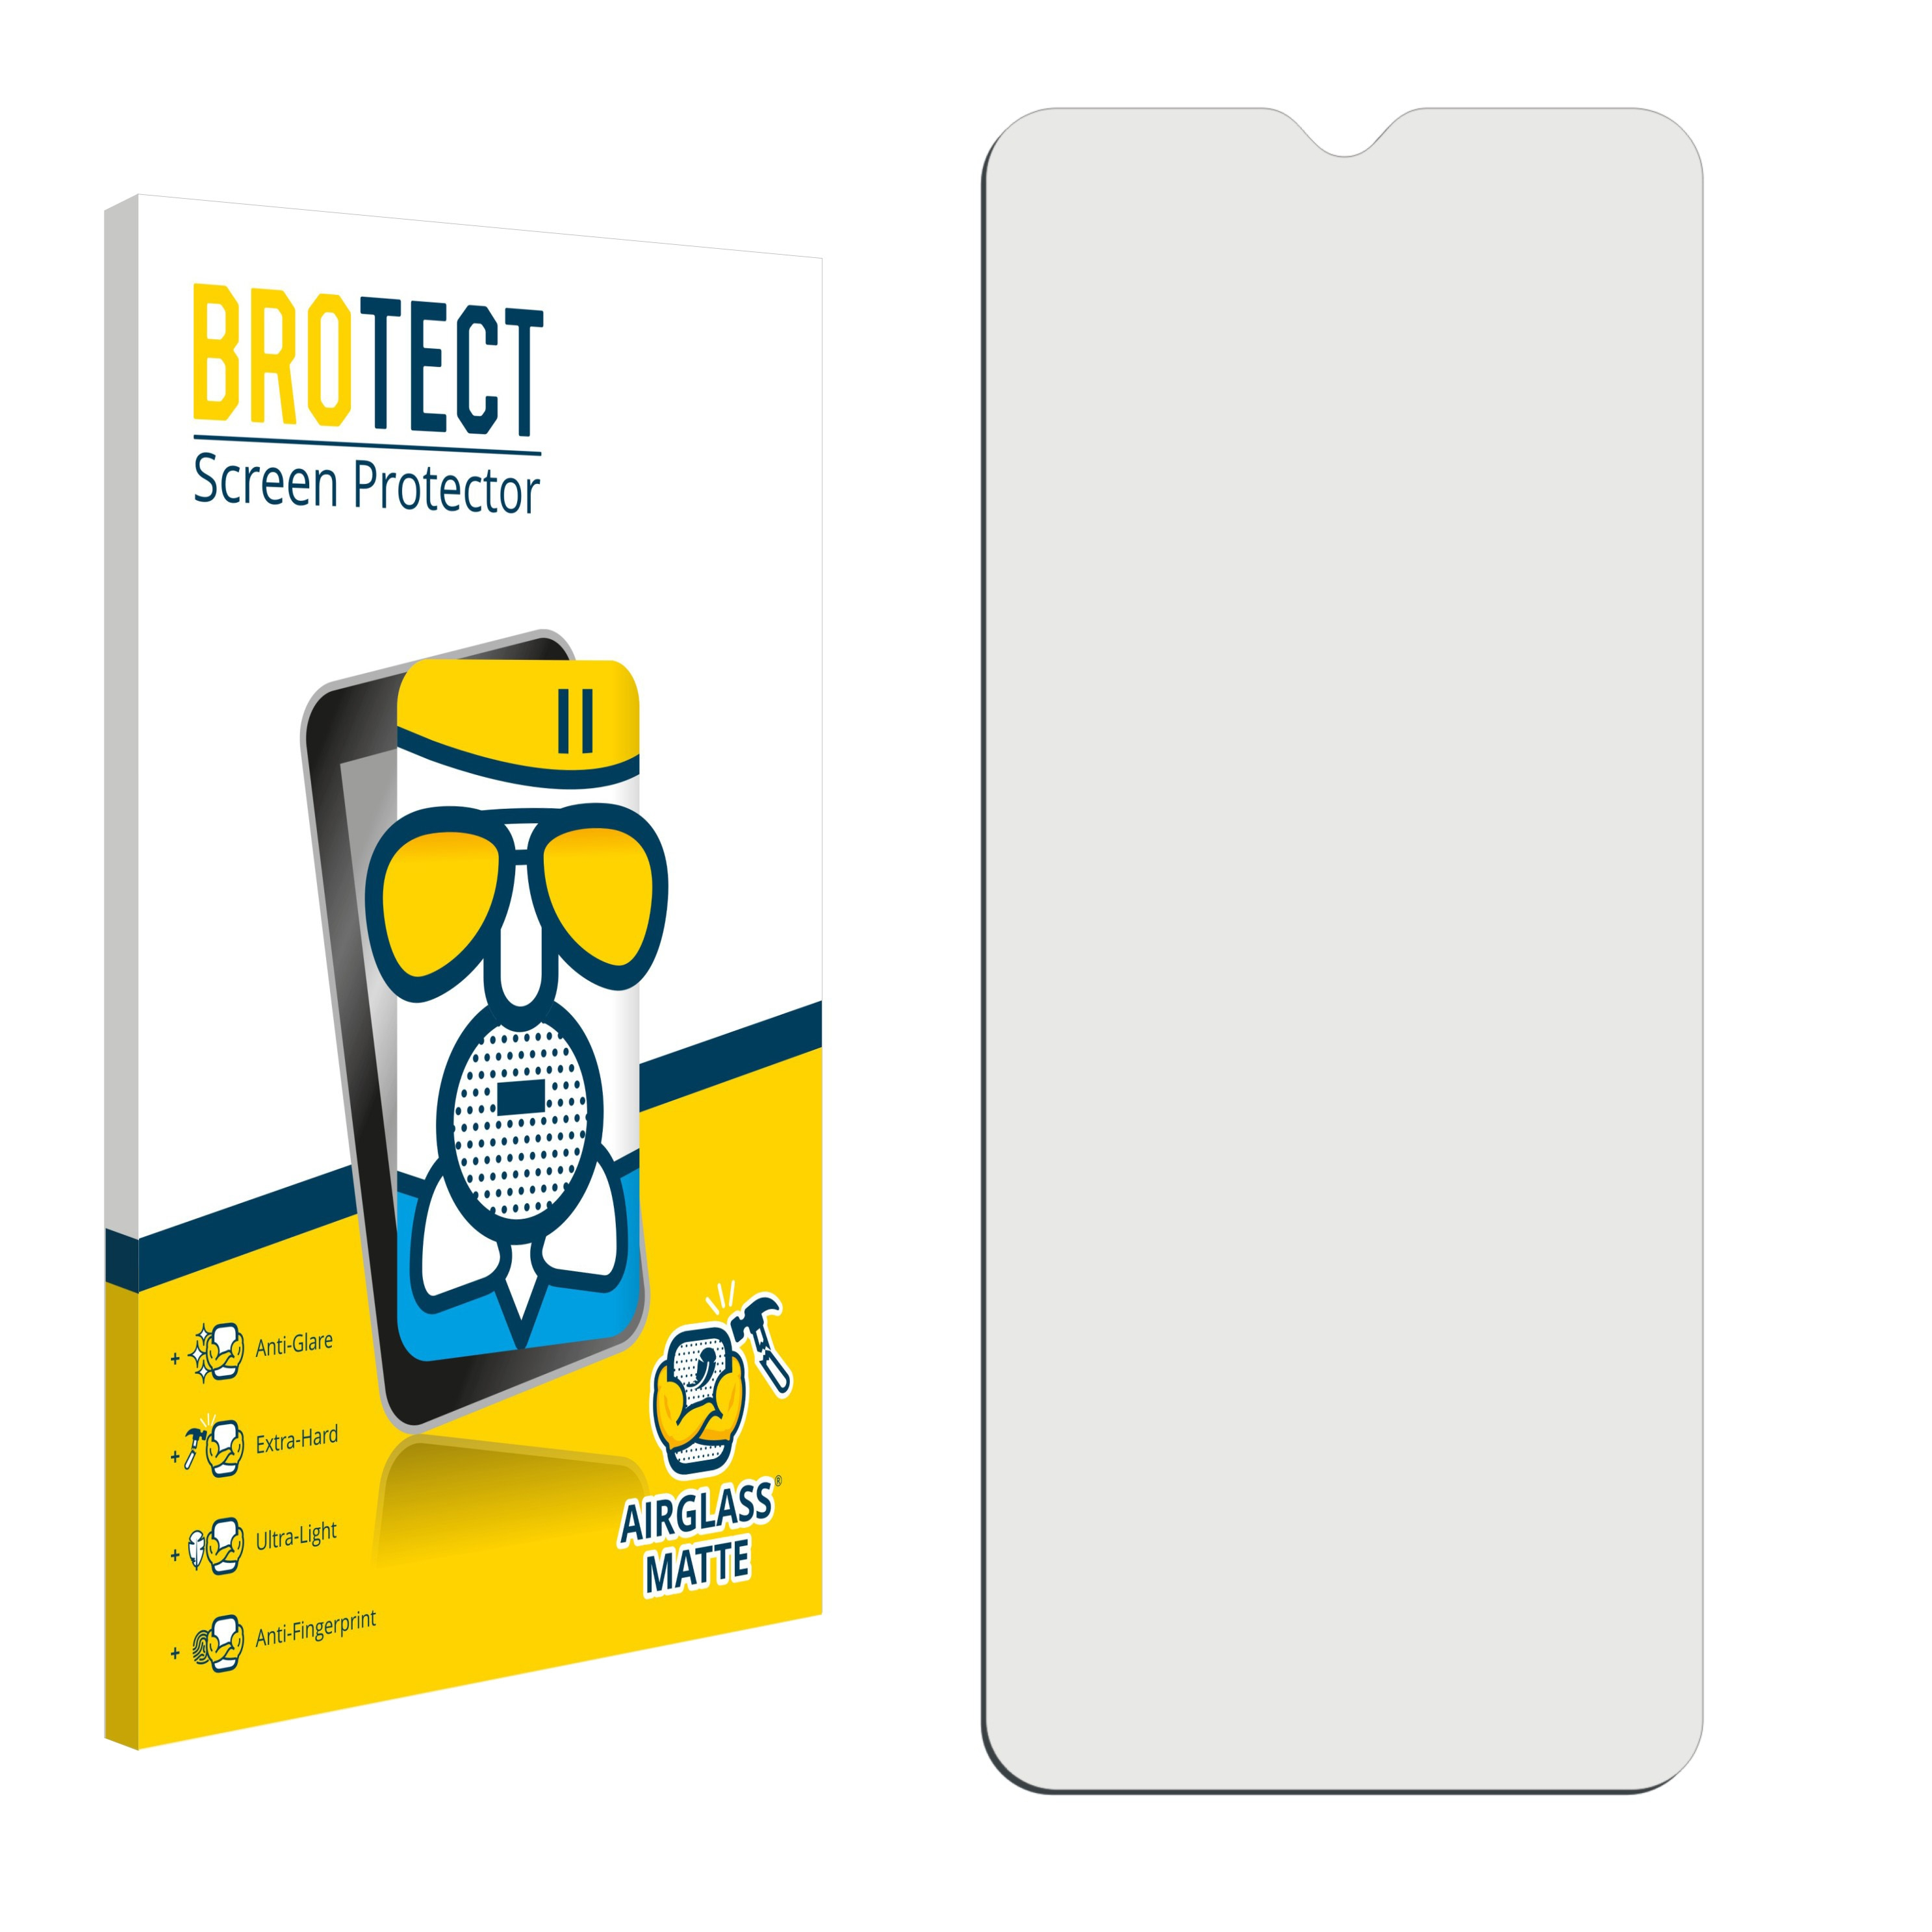 1.4) BROTECT Nokia Schutzfolie(für matte Airglass